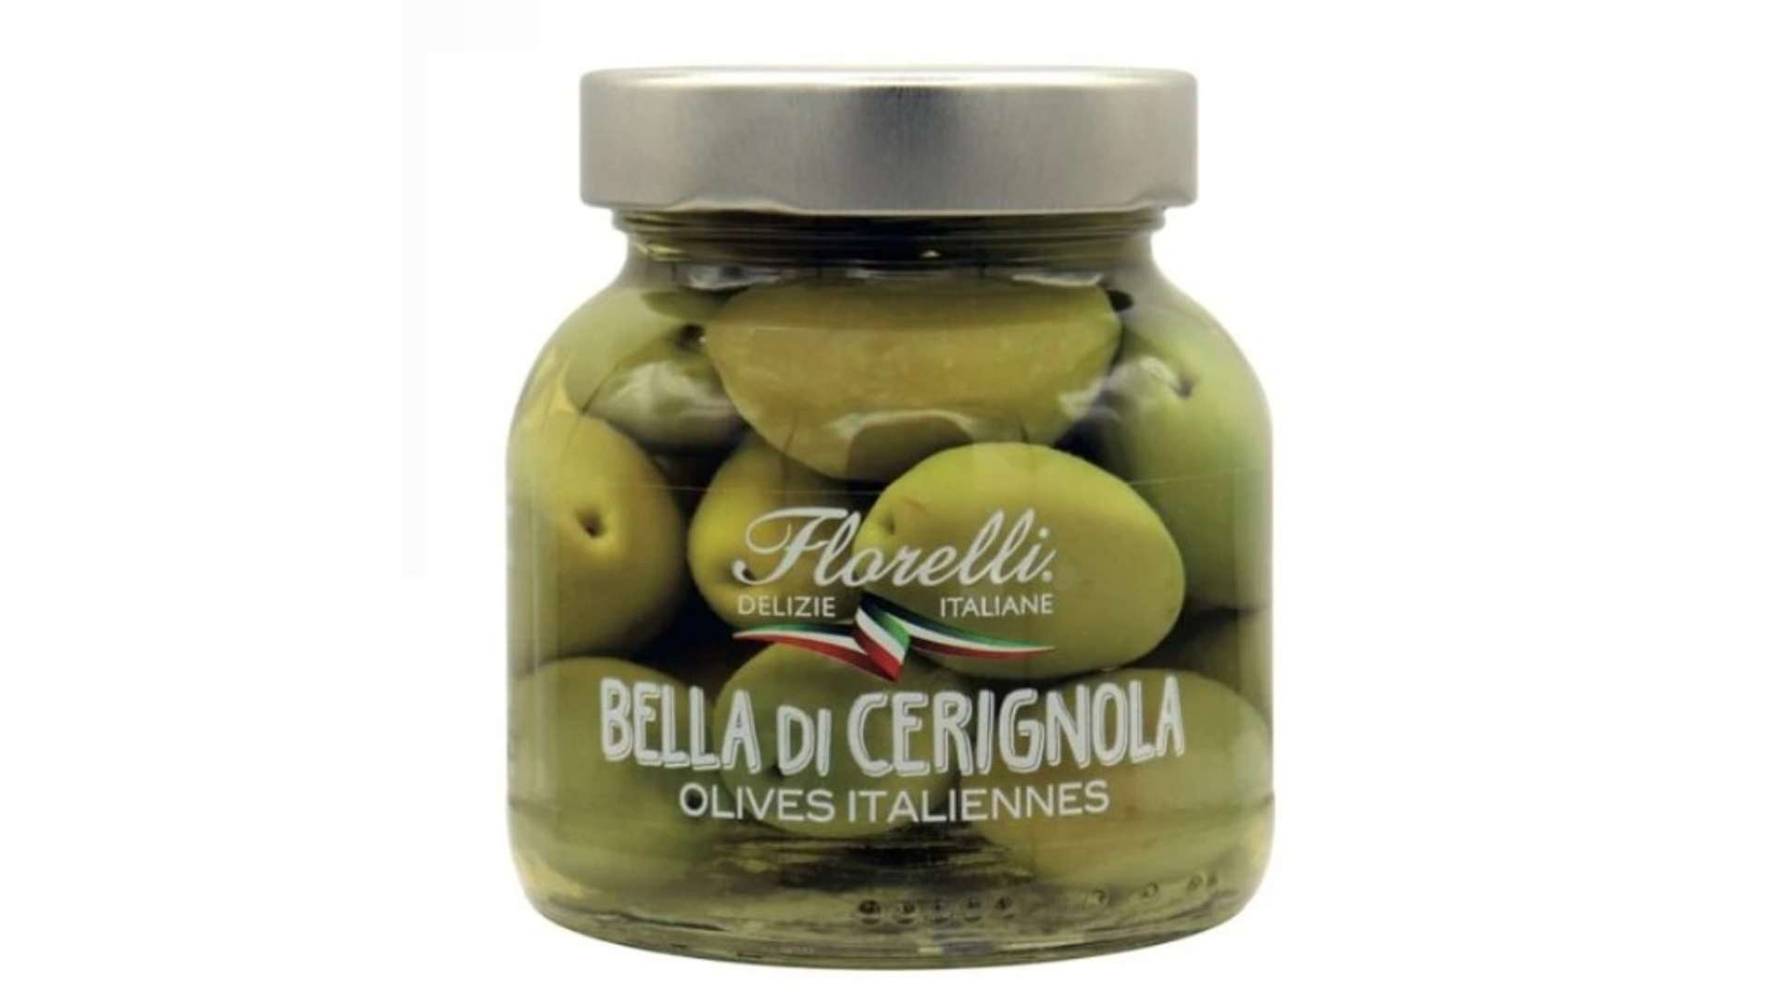 Florelli - Bella di cerignola olives vertes italiennes